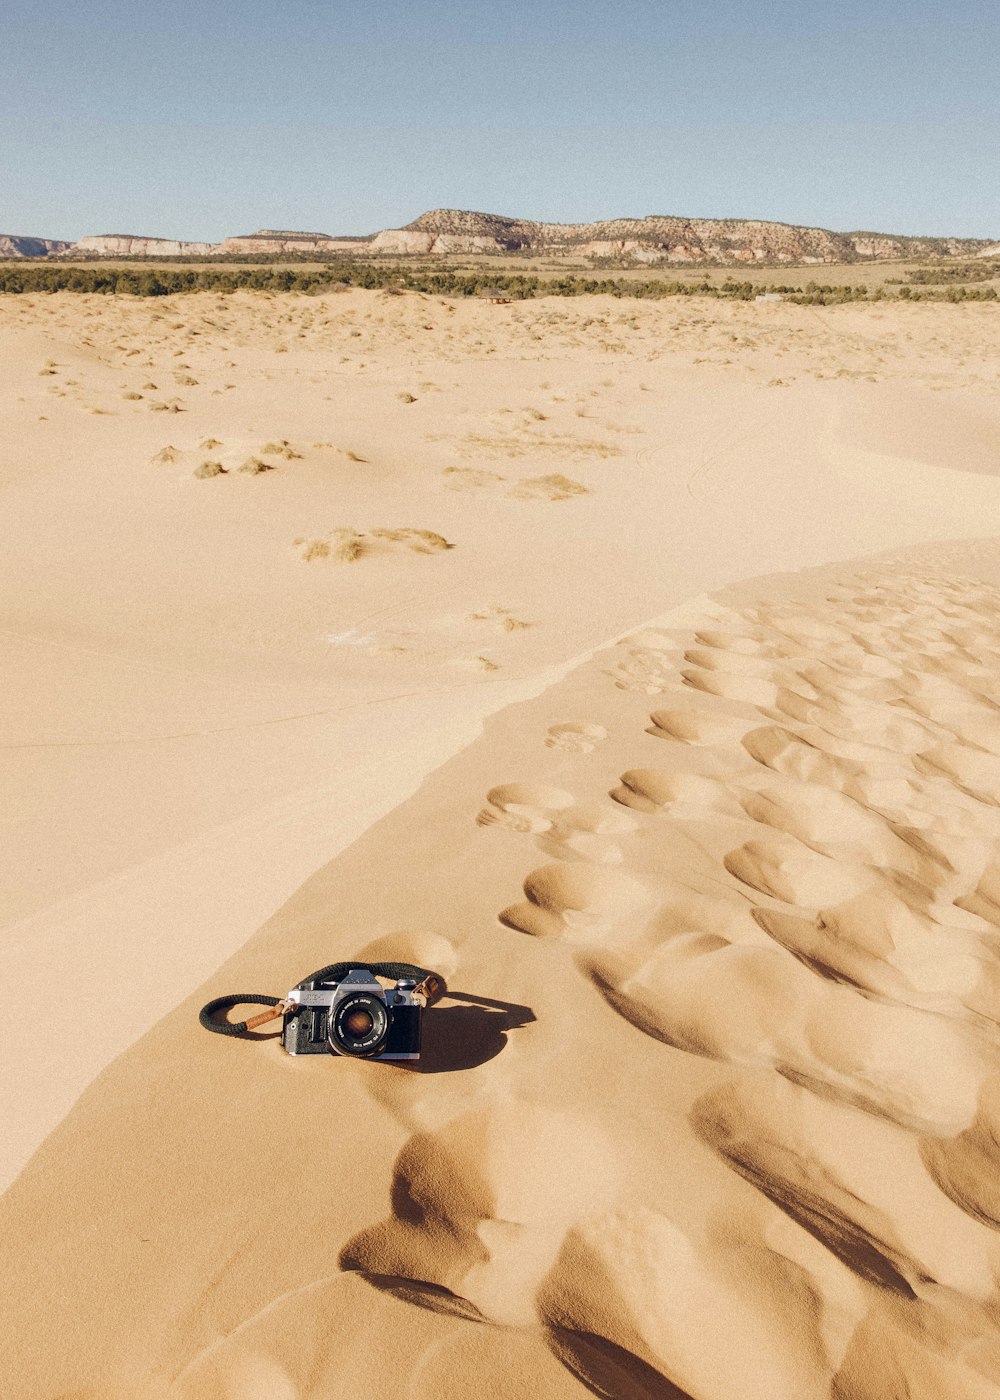 black car on desert during daytime